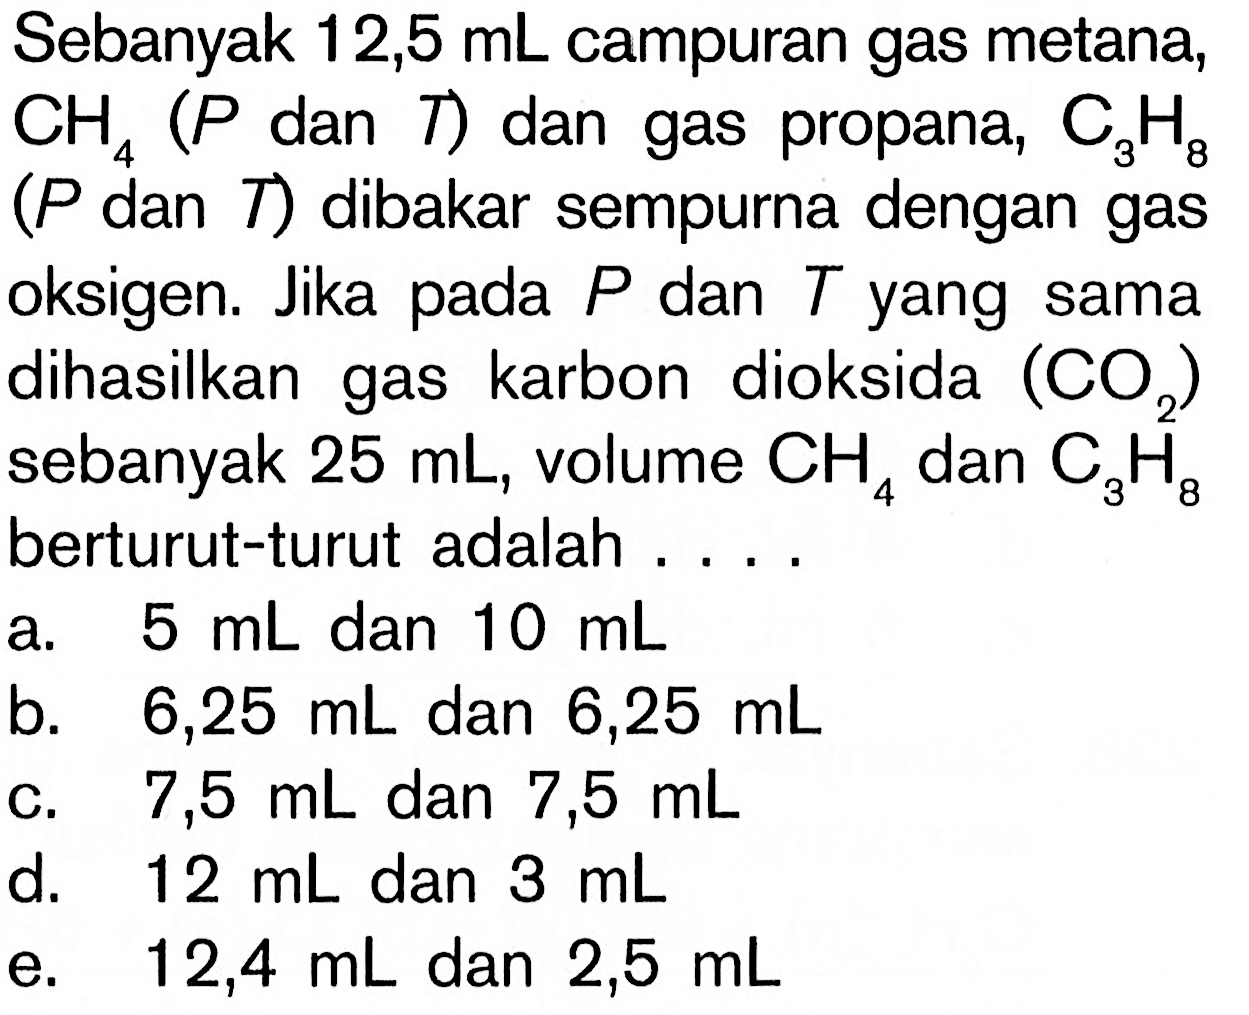 Sebanyak 12,5 mL campuran gas metana; CH4 (P dan T) dan gas propana, C3H8 (P dan T) dibakar sempurna dengan gas oksigen. Jika pada P dan T yang sama dihasilkan gas karbon dioksida (CO2) sebanyak 25 mL, volume CHS 4 dan CaH8 berturut-turut adalah